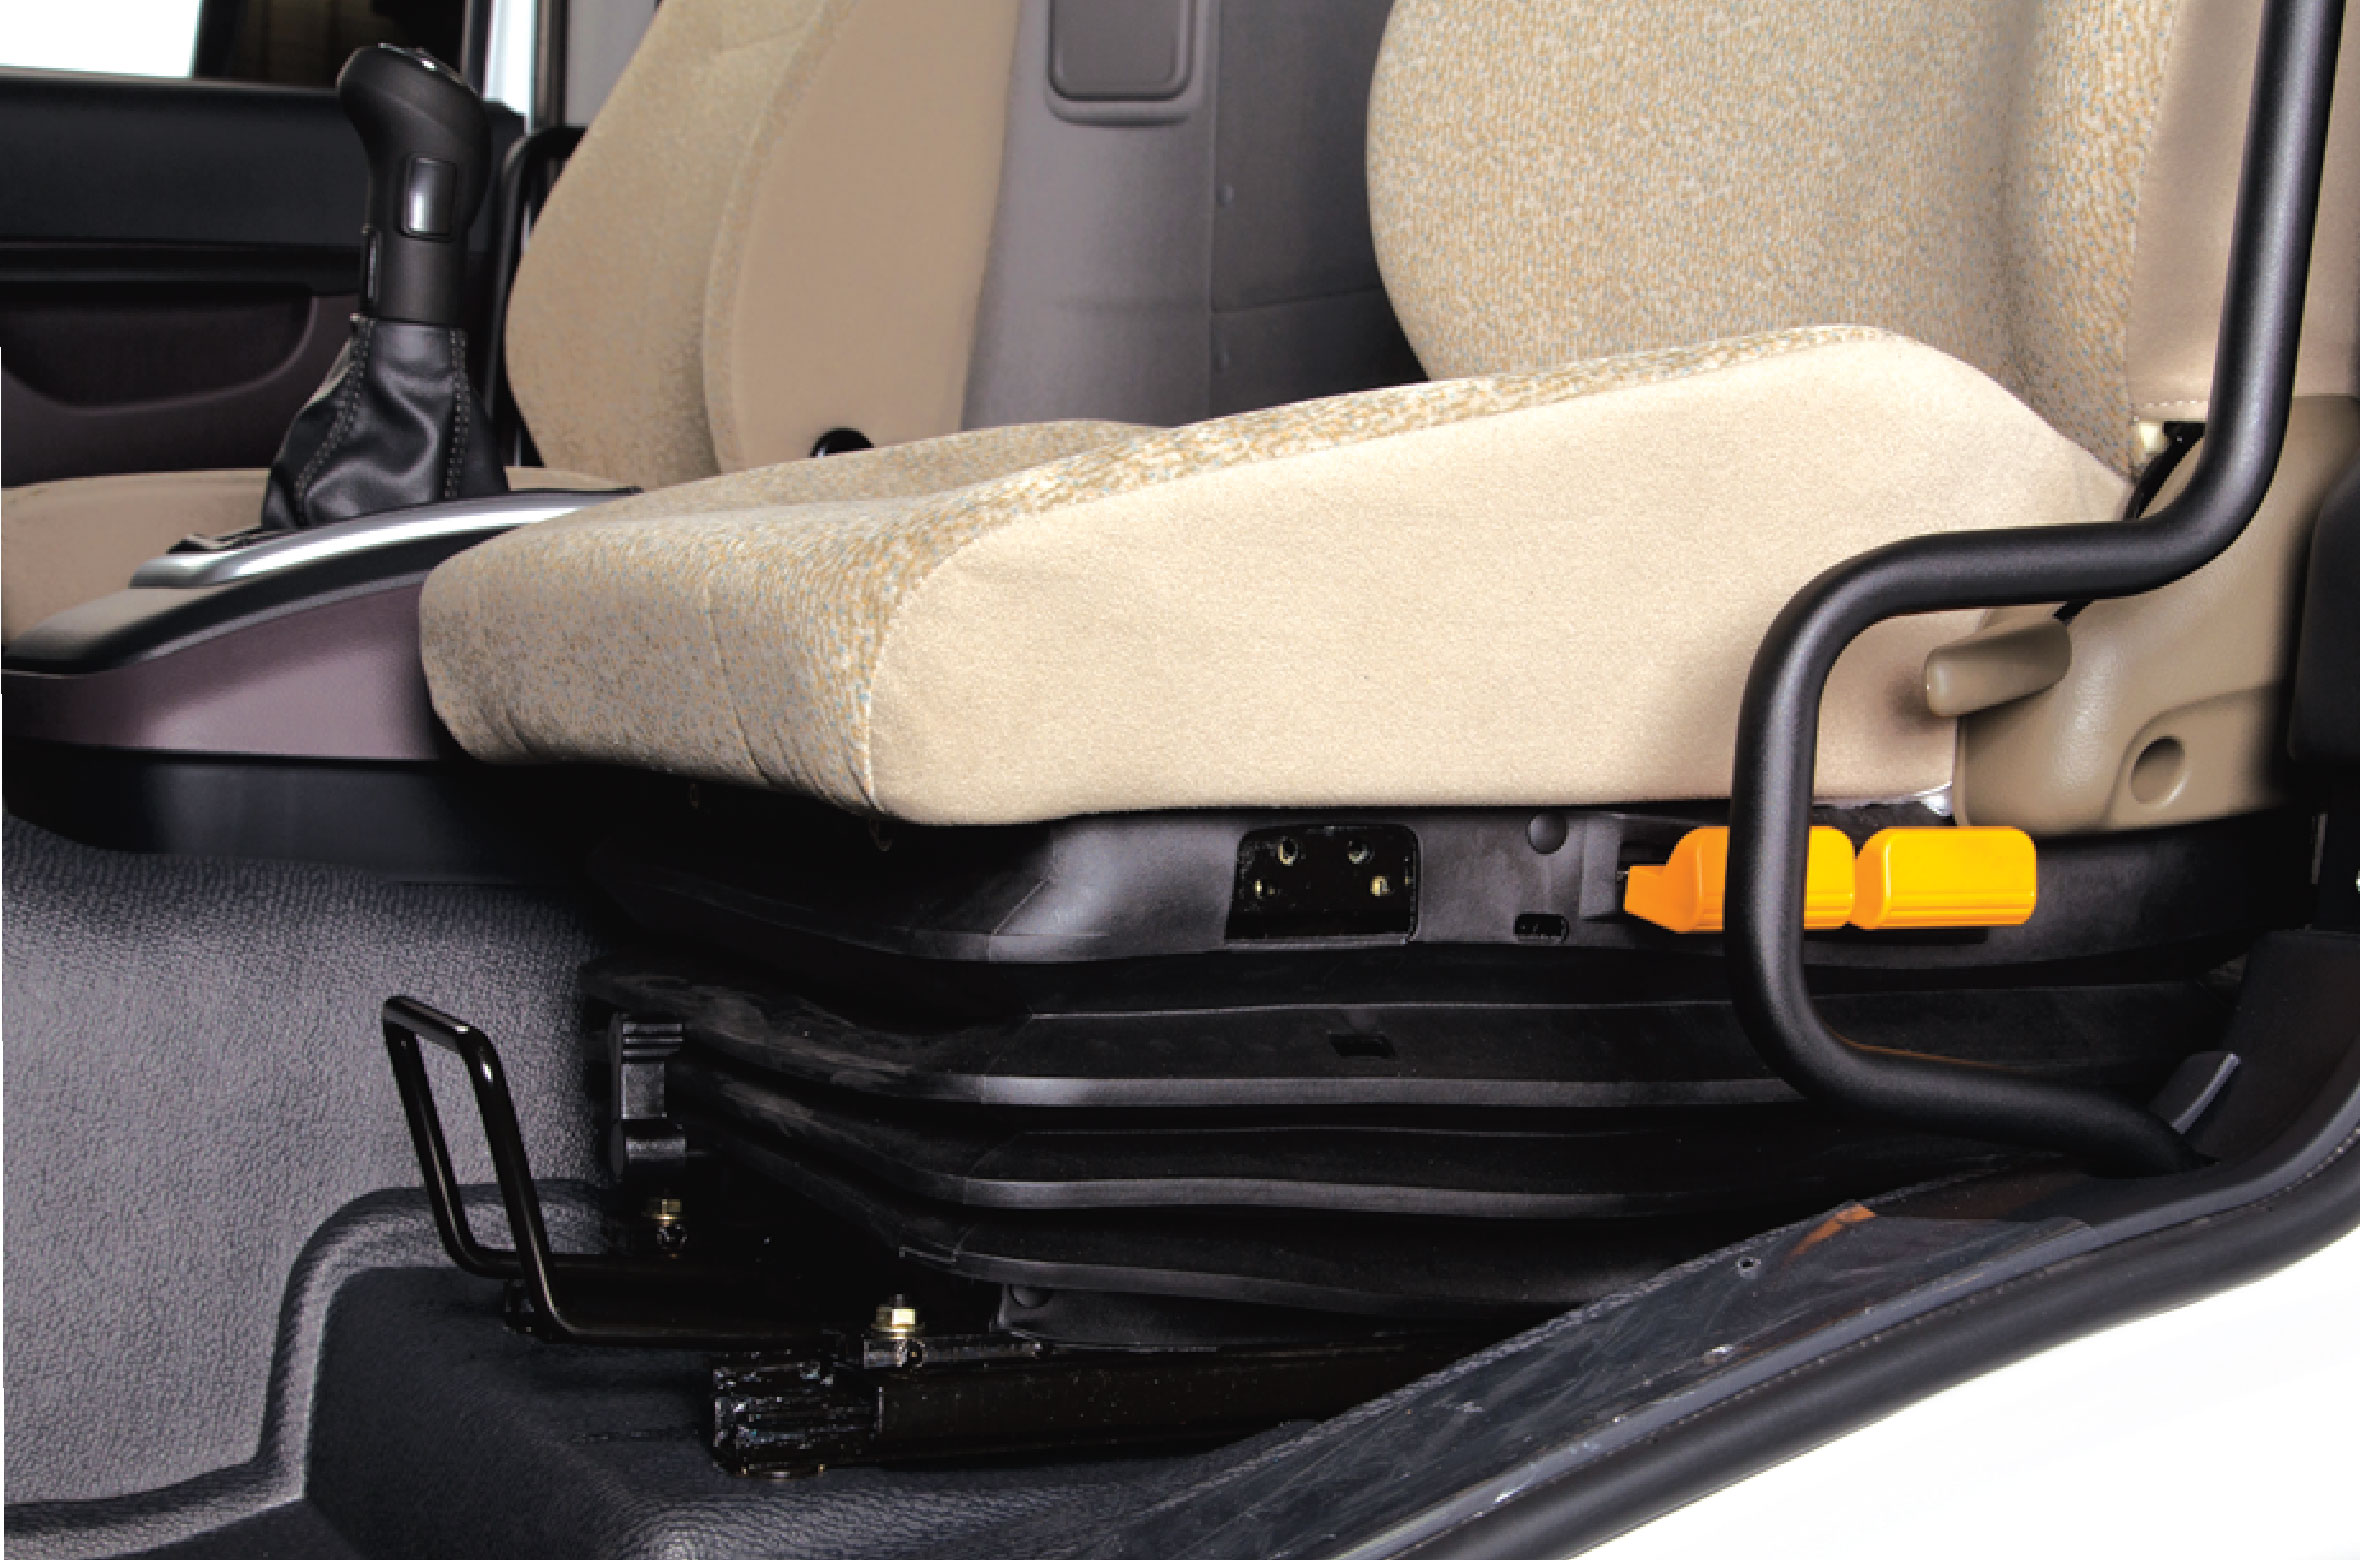  Ghế tài xế trang bị đệm khí nén (tùy chọn) giúp giảm chấn, đem lại cảm giác thoải mái khi ngồi.